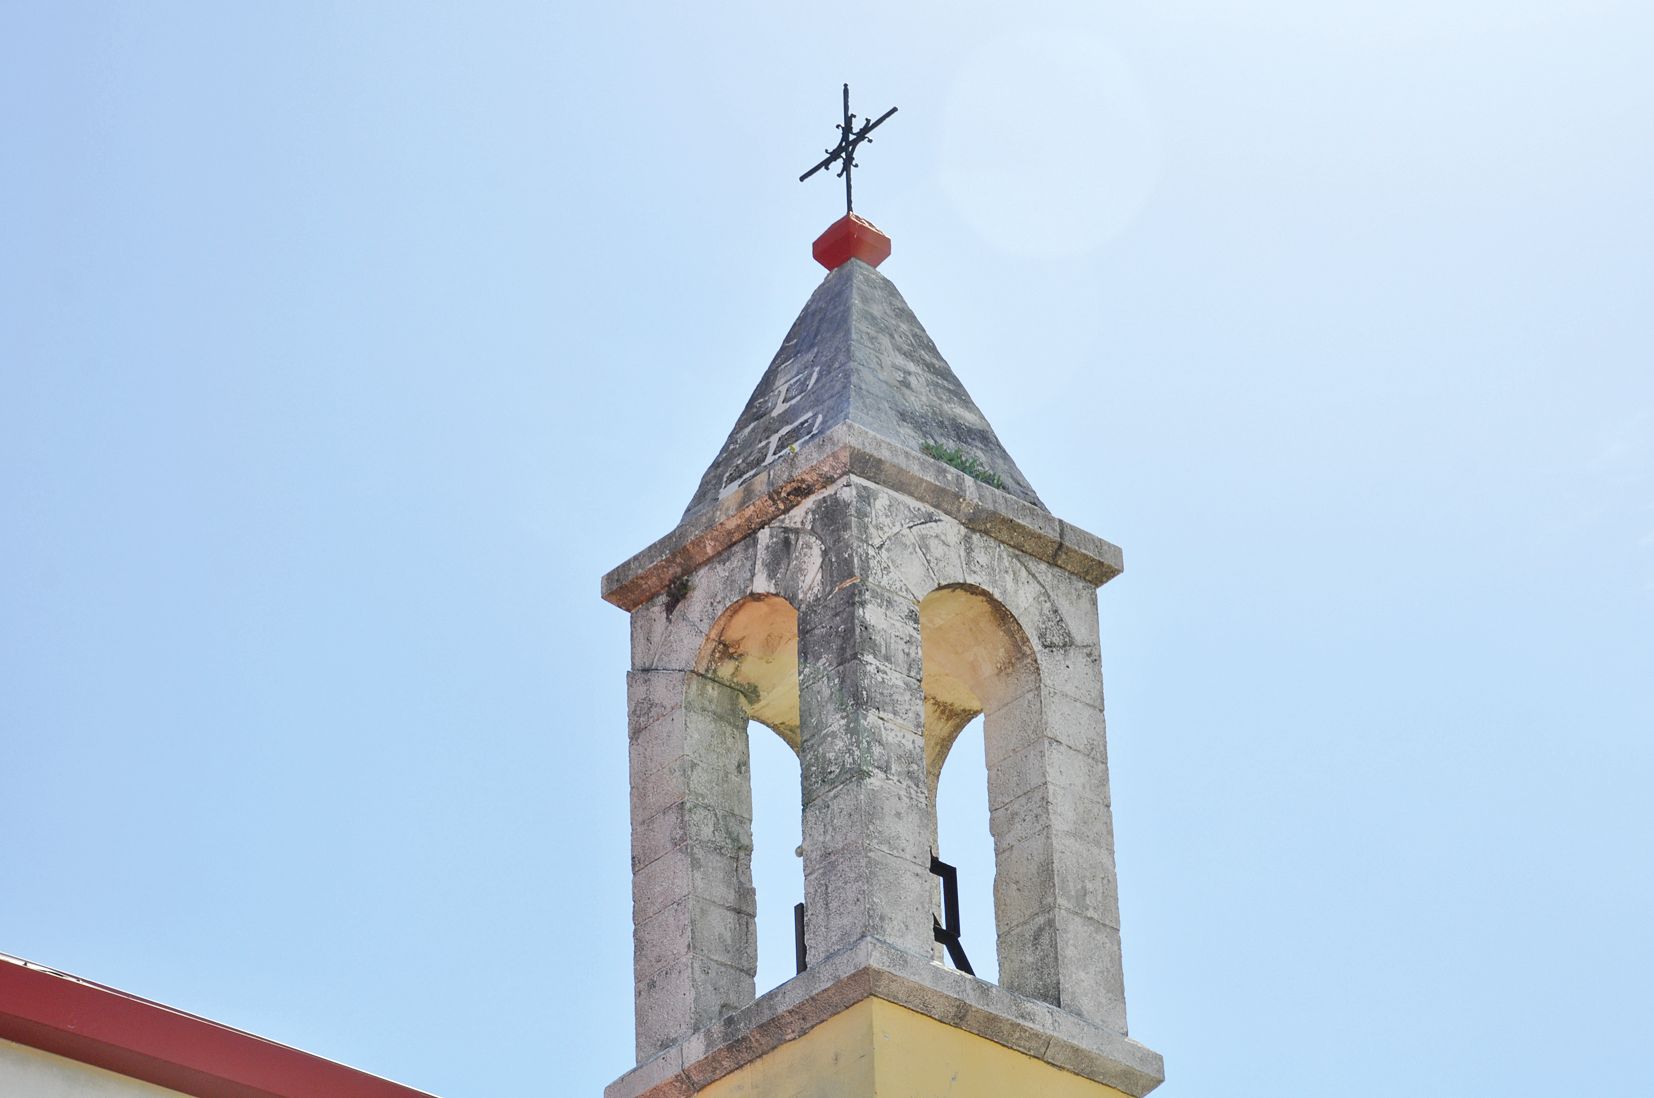 Un des quatre piliers du clocher de l’église de Pénélo s’est fissuré de façon préoccupante.